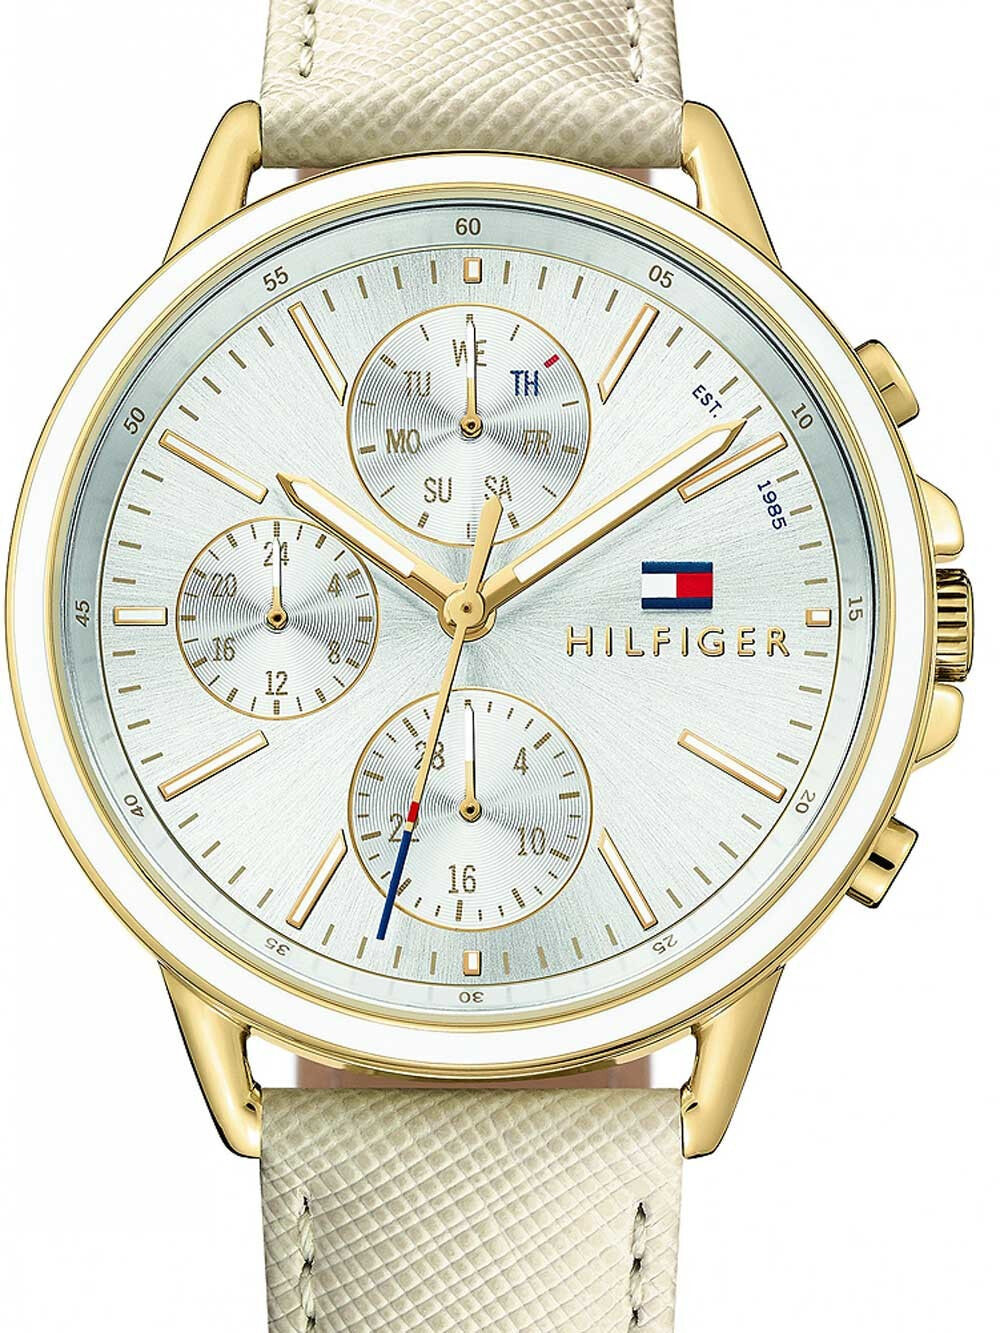 Женские наручные кварцевые часы Tommy Hilfiger 12-ти и 24-х часовой формат времени. Заводная головка с защитой. Браслет кожаный.